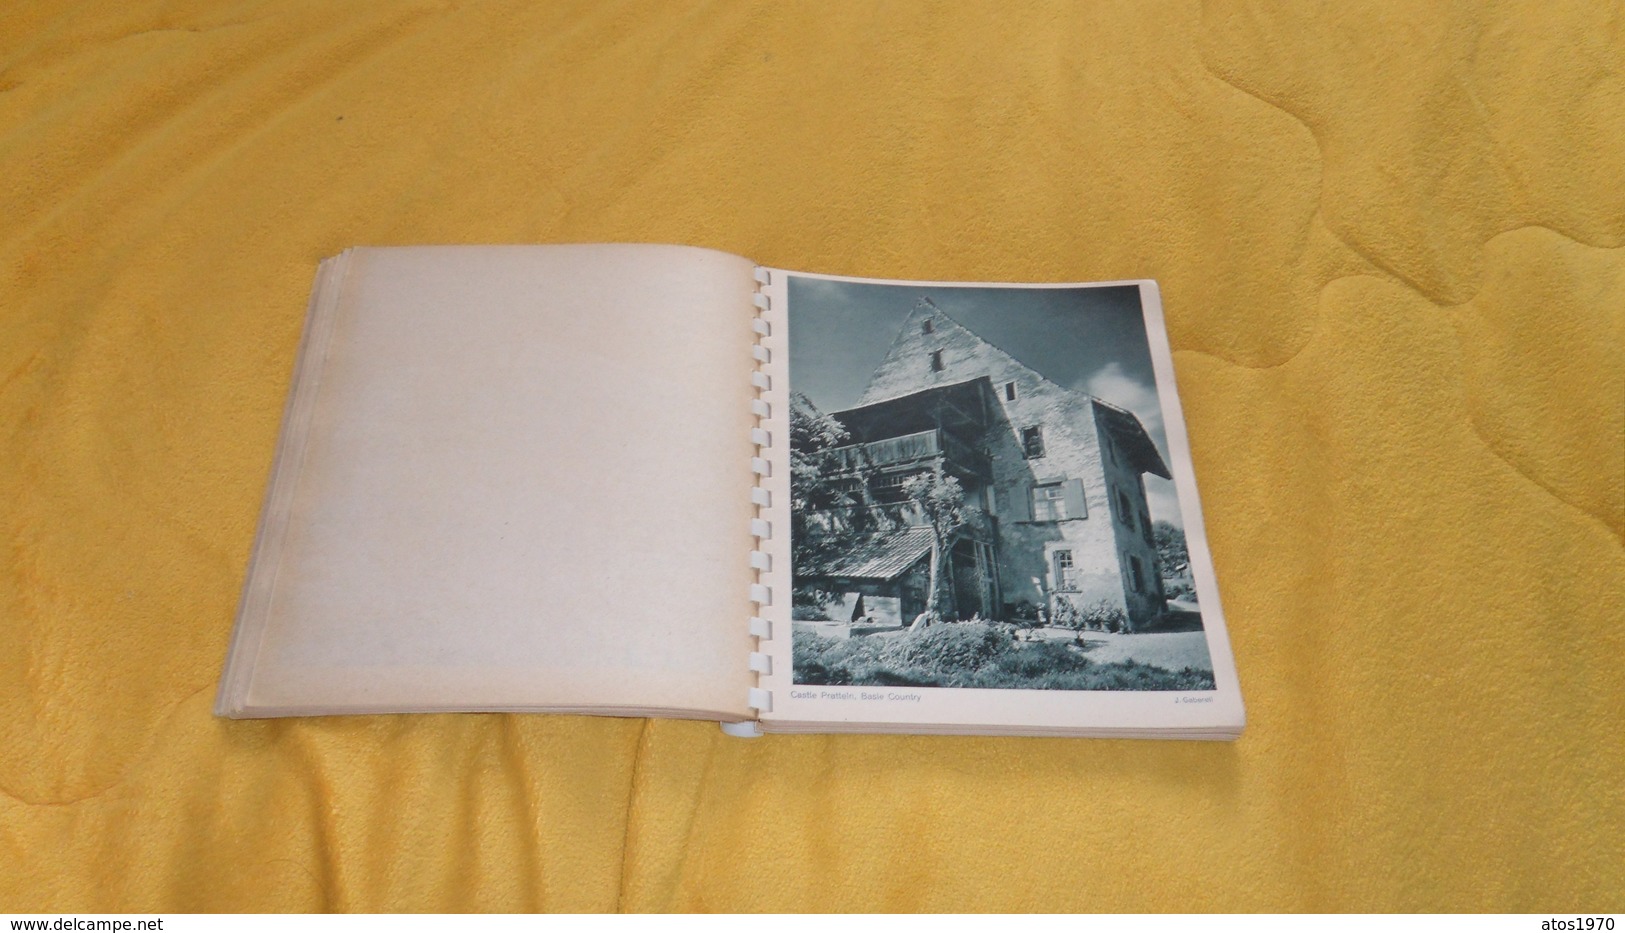 LIVRE DE 127 PICTURES OF SWITZERLAND BY JEAN GABERELL LTD. PUBLISHER THALWIL ZURICH. / VUE DE SUISSE. EN ANGLAIS. - Europe